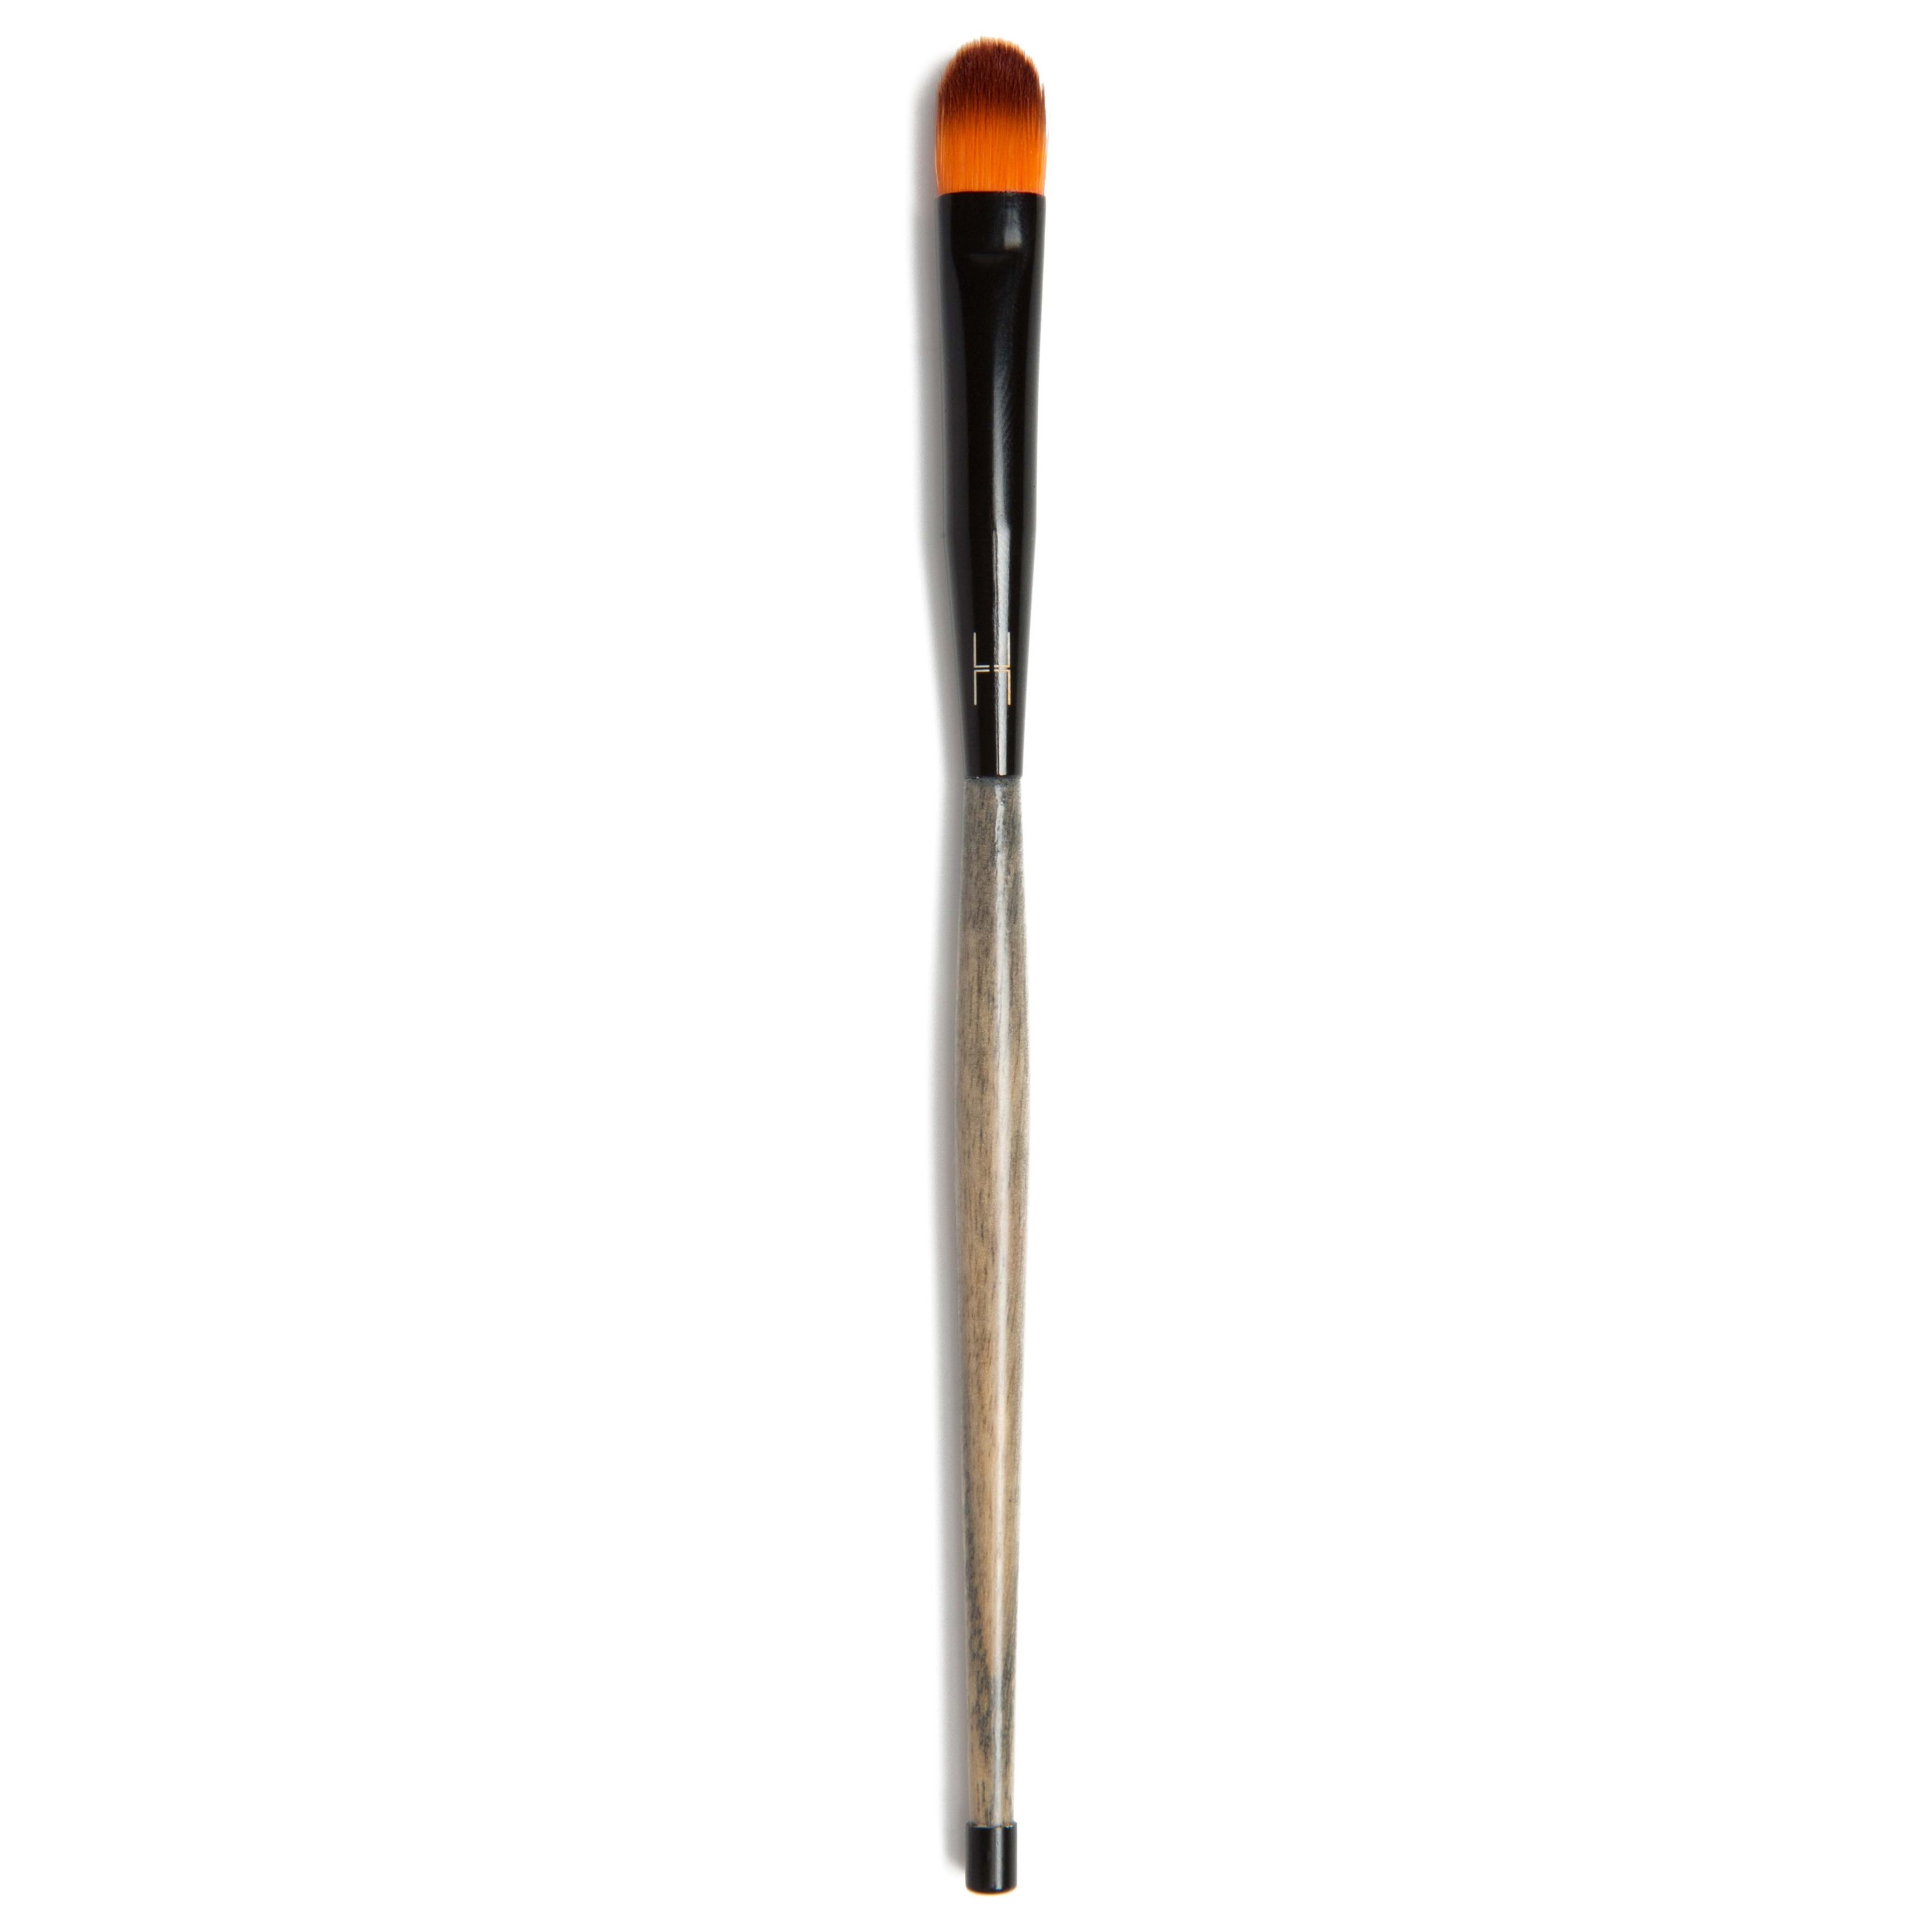 Läs mer om LH cosmetics Brushes & Tools Applicator Brush